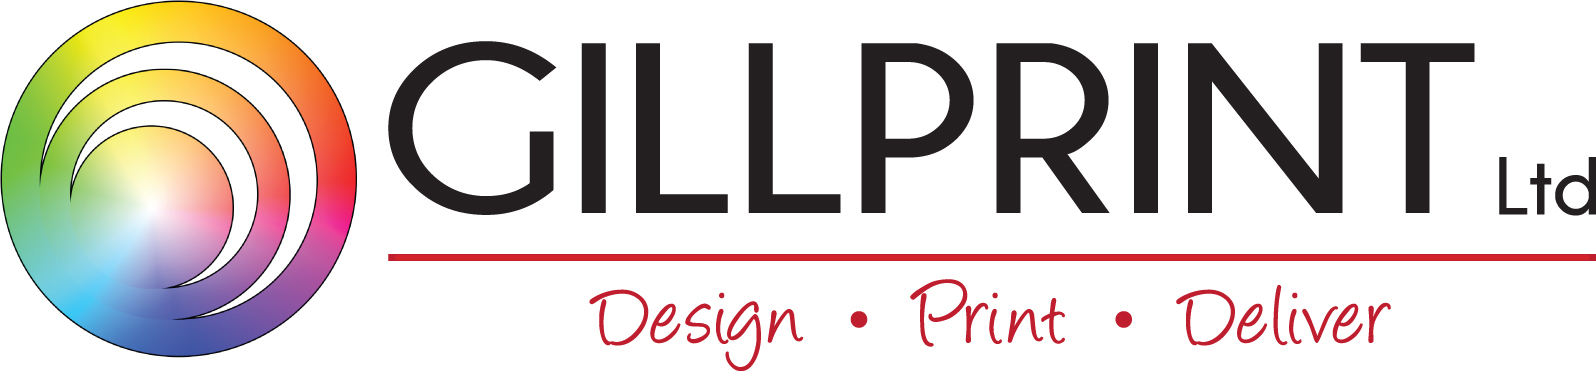 Gillprint logo